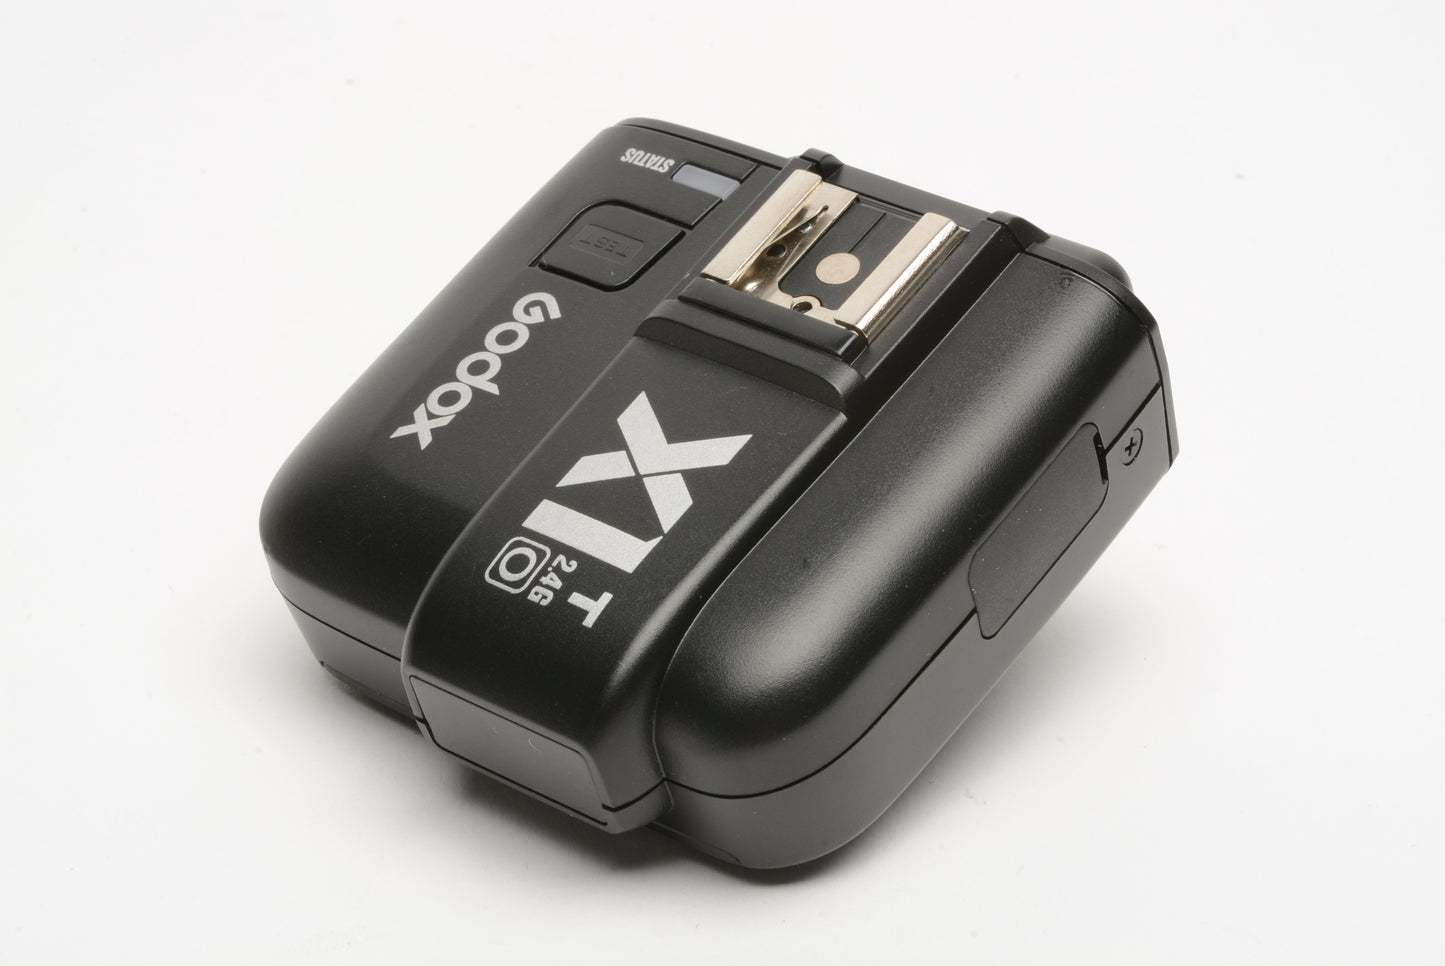 Godox X1T-O 2.4G TTL Wireless Flash Trigger Transmitter For Olympus & Panasonic